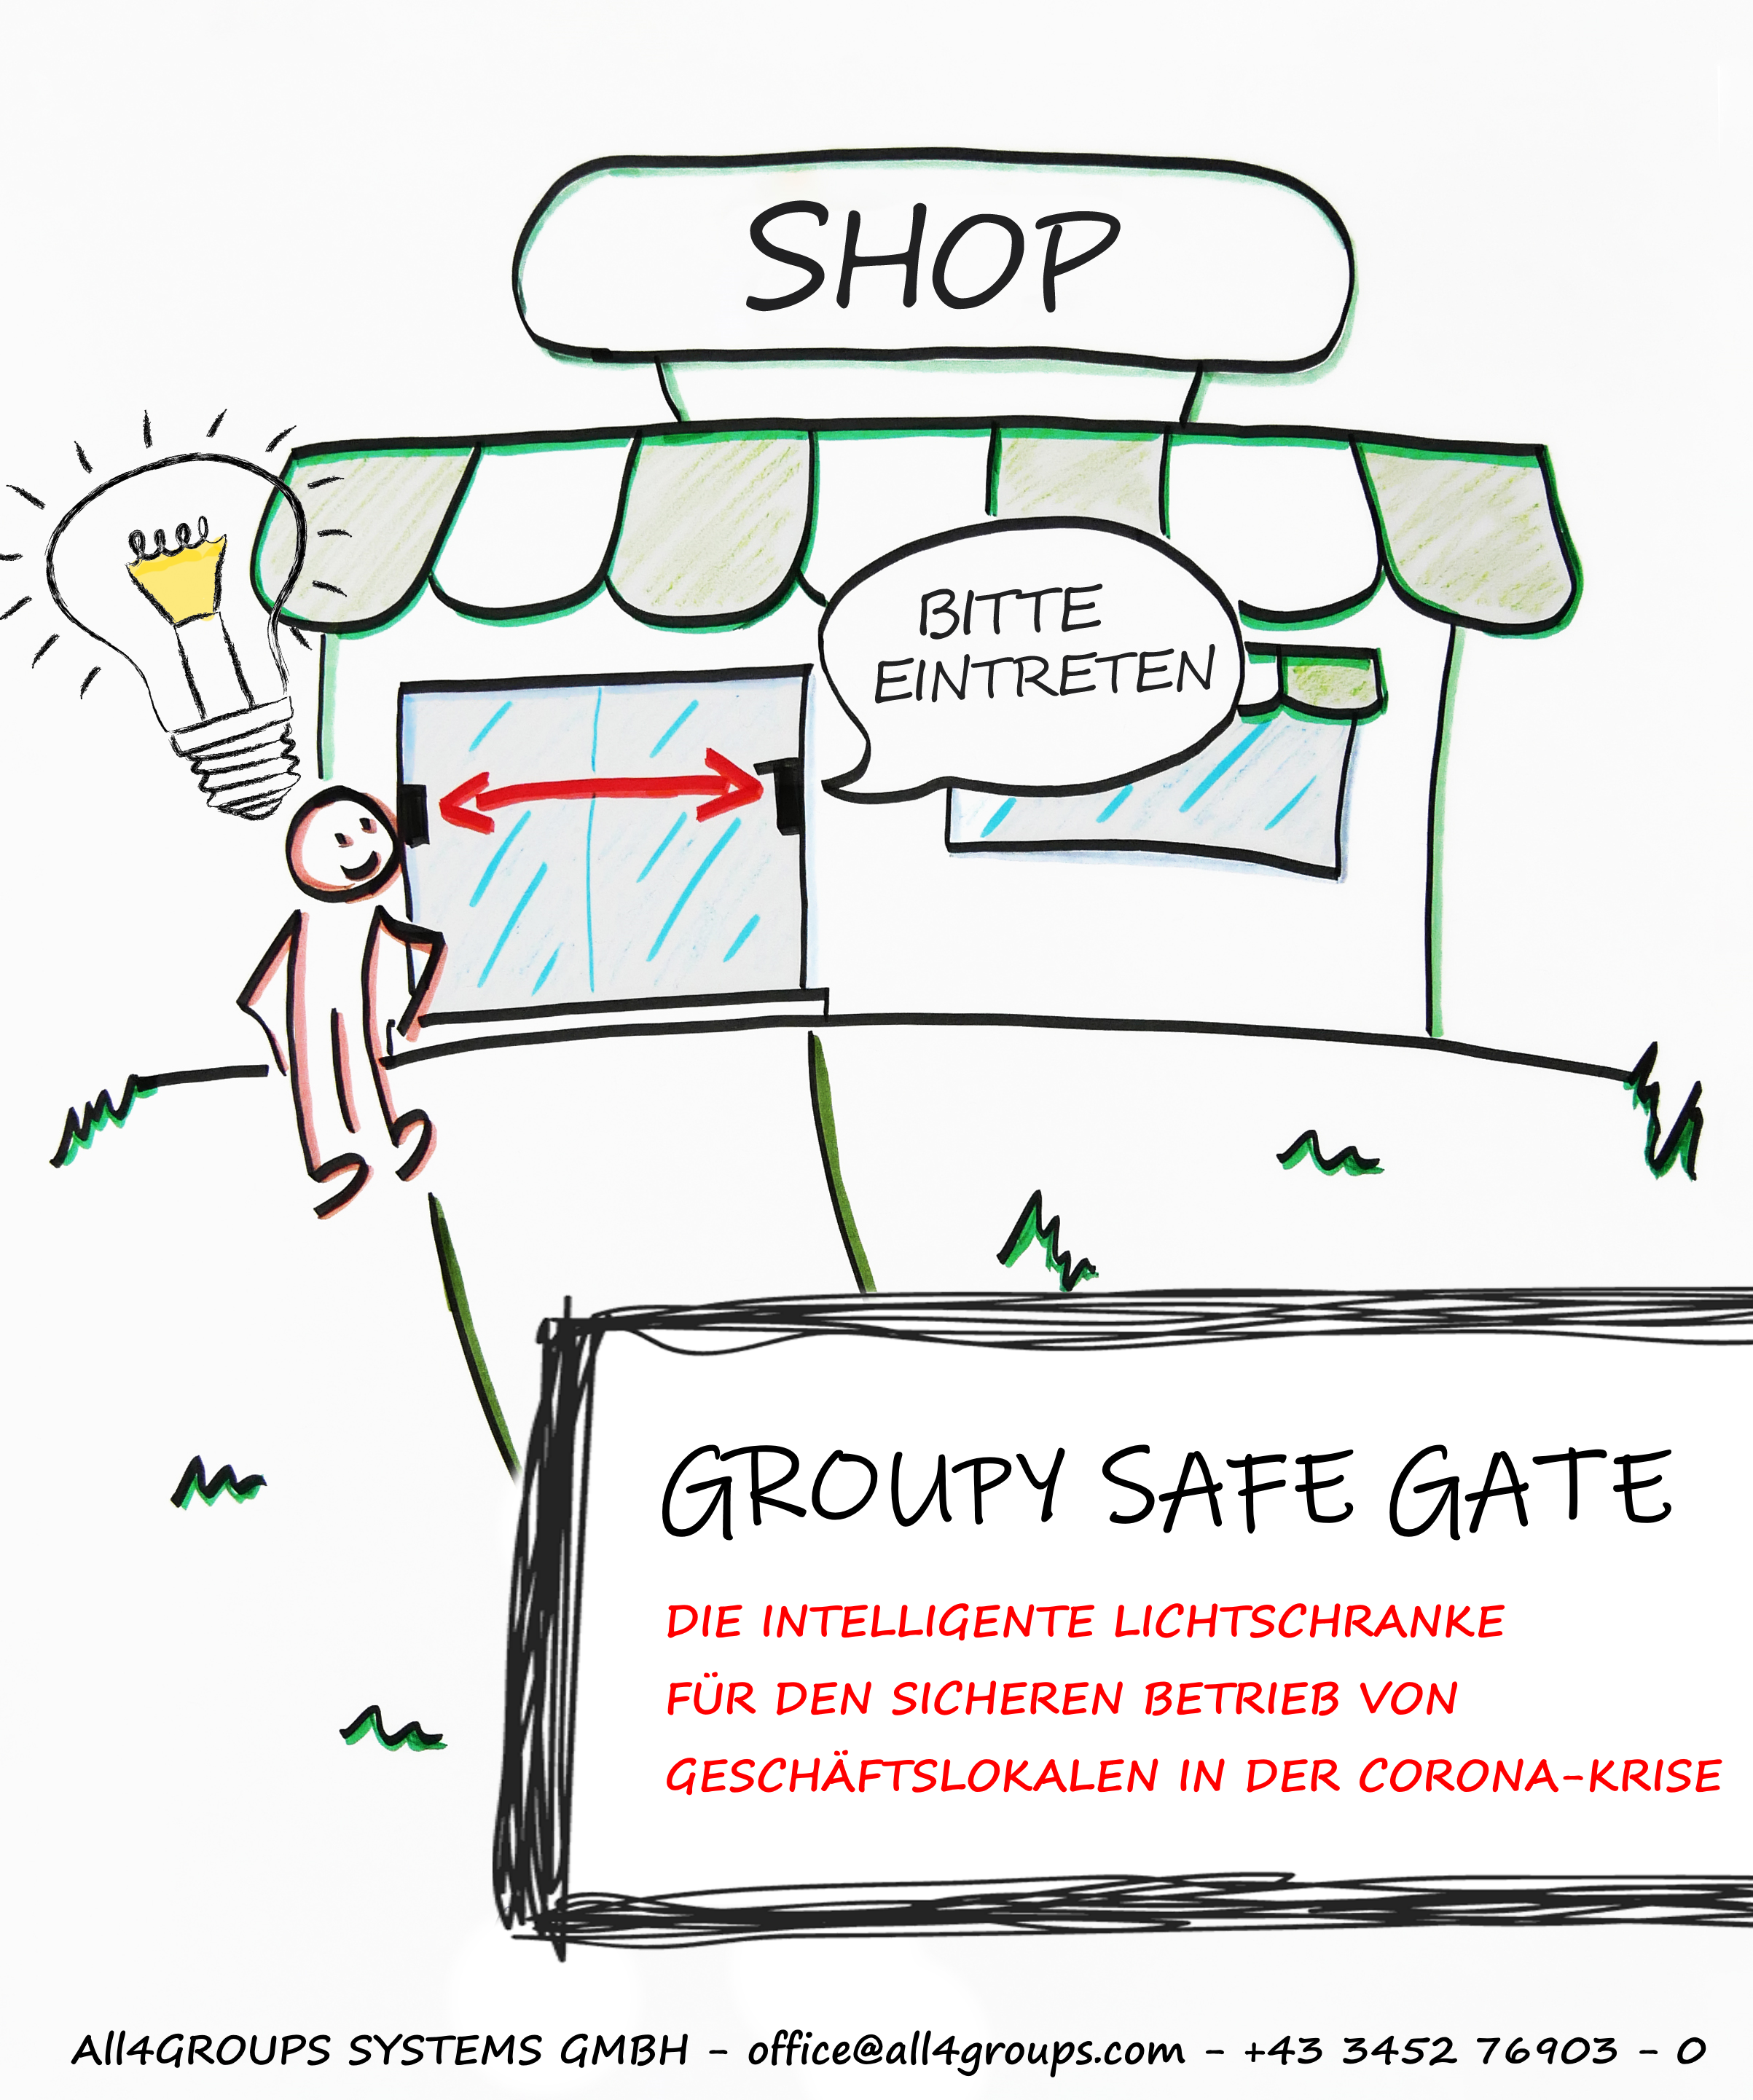 Groupy Safe Gate